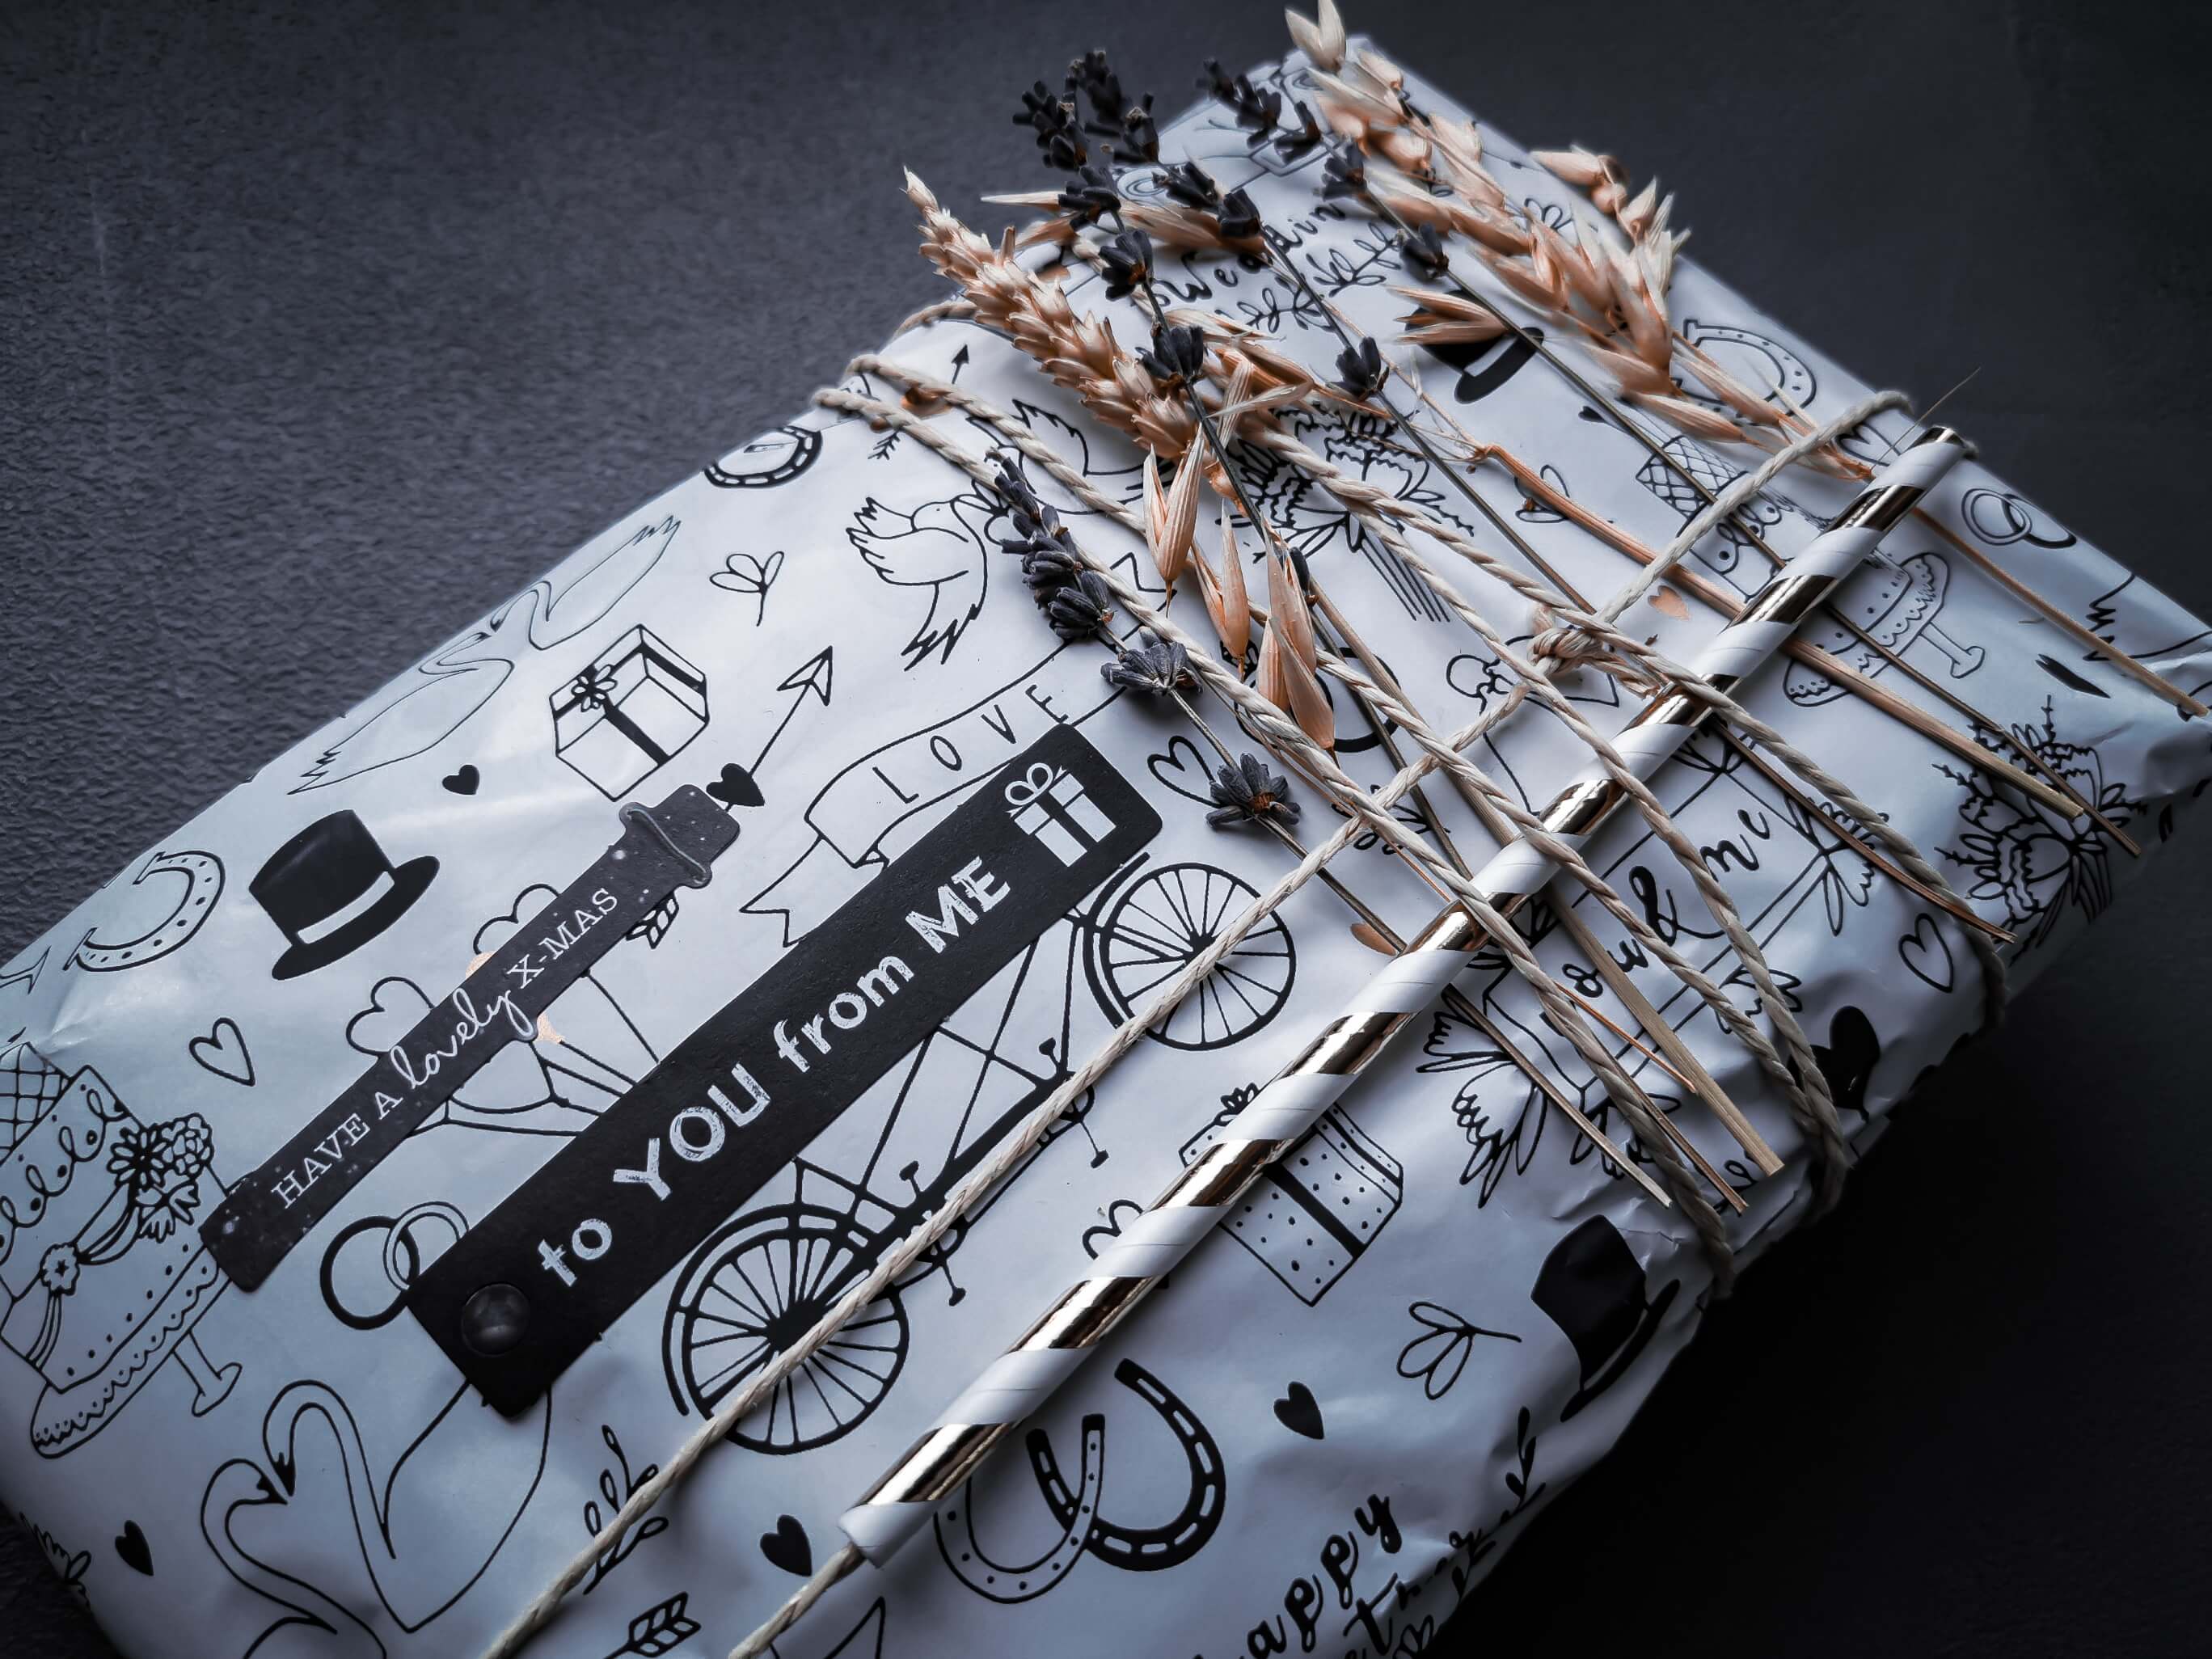 IMG 20191207 113323 resized 20191208 060150706 - Geschenke verpacken: 11 kreative Tipps zum Selbermachen